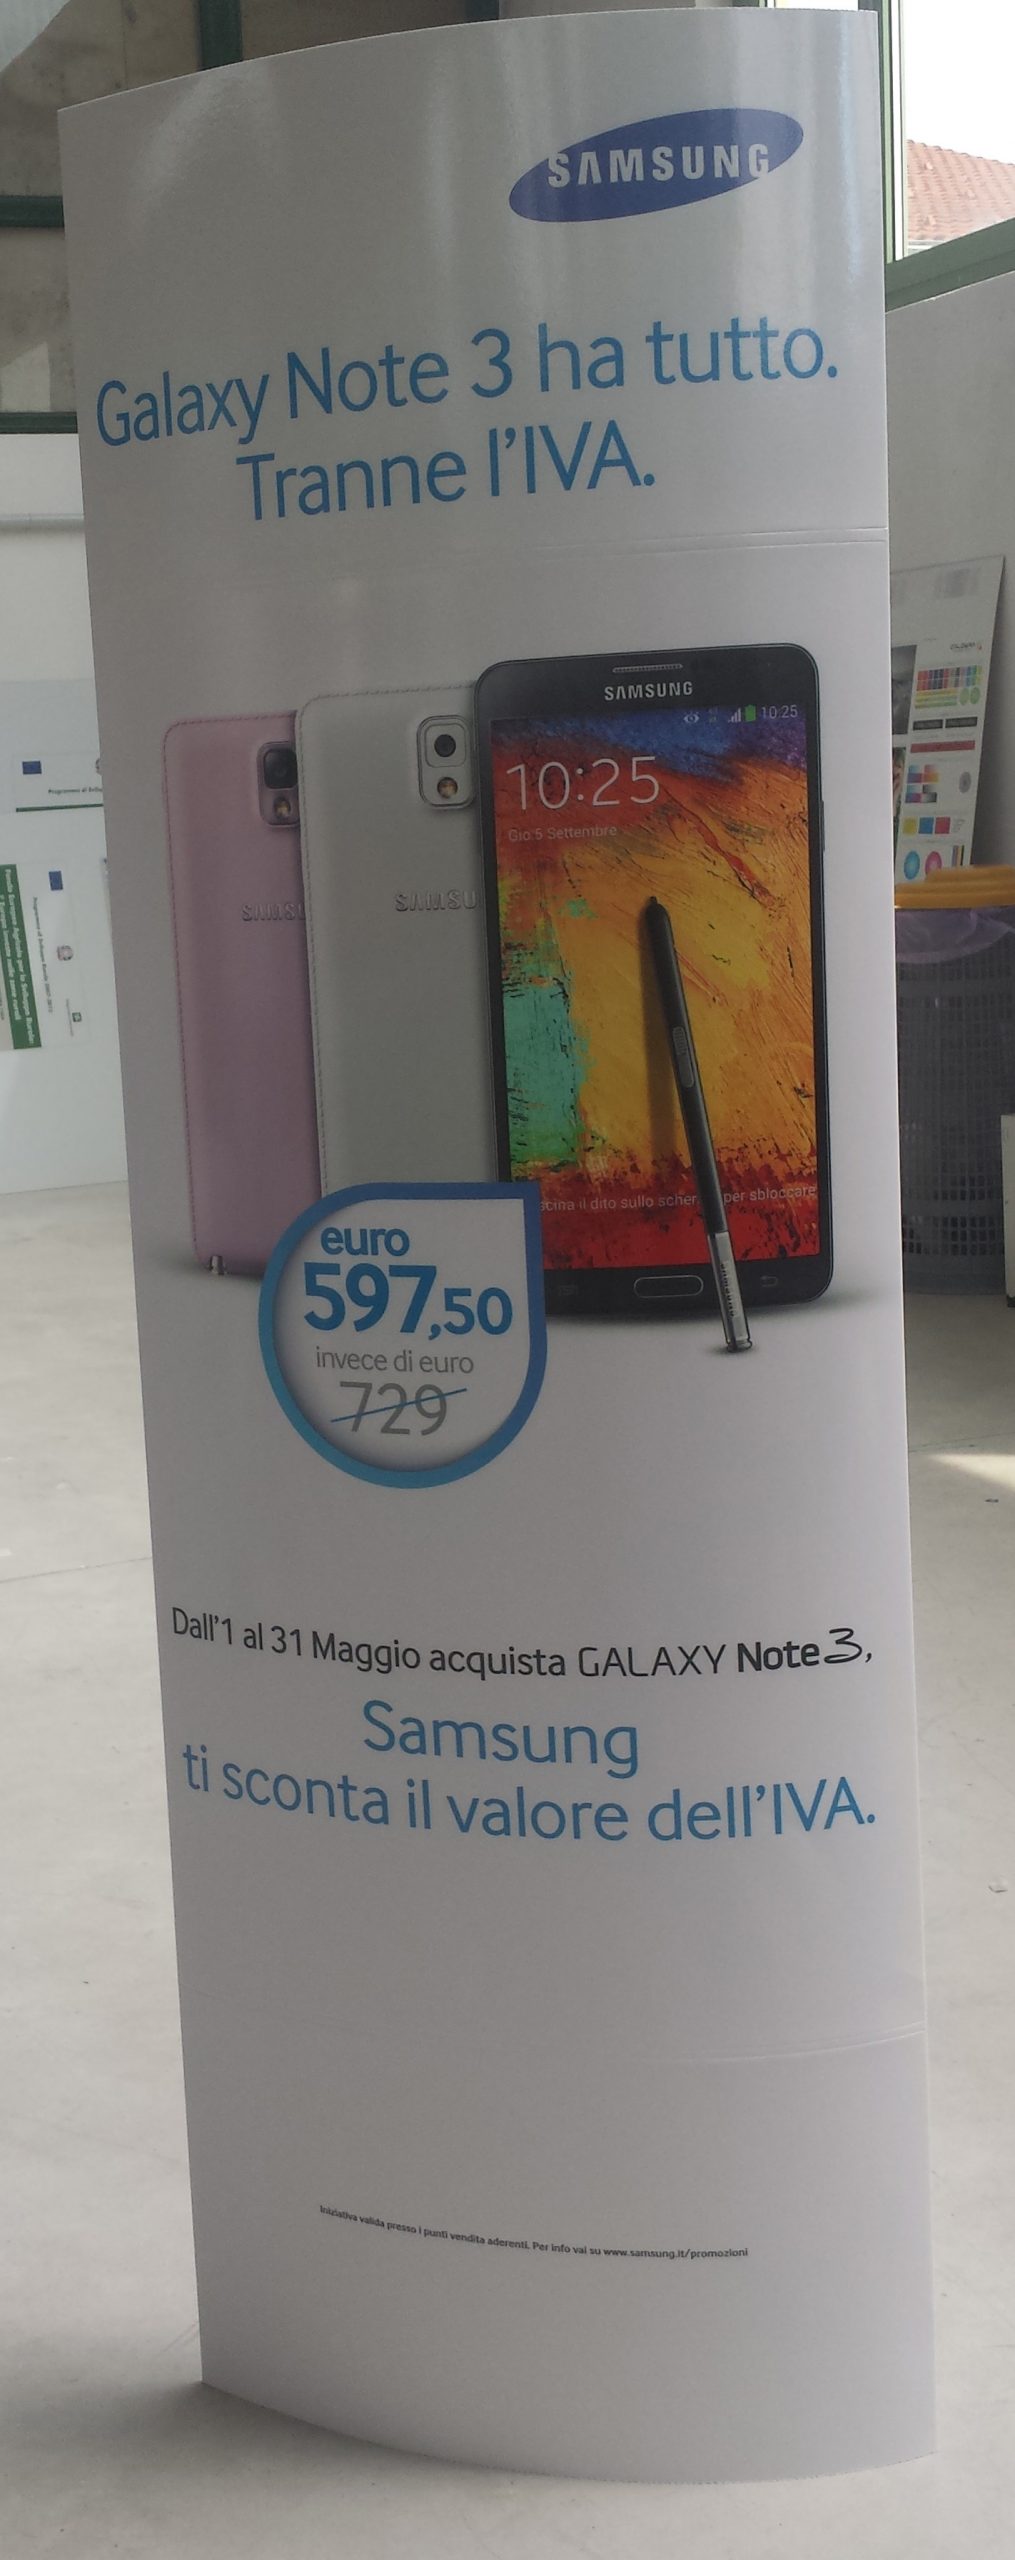 Totem pubblicitari Samsung